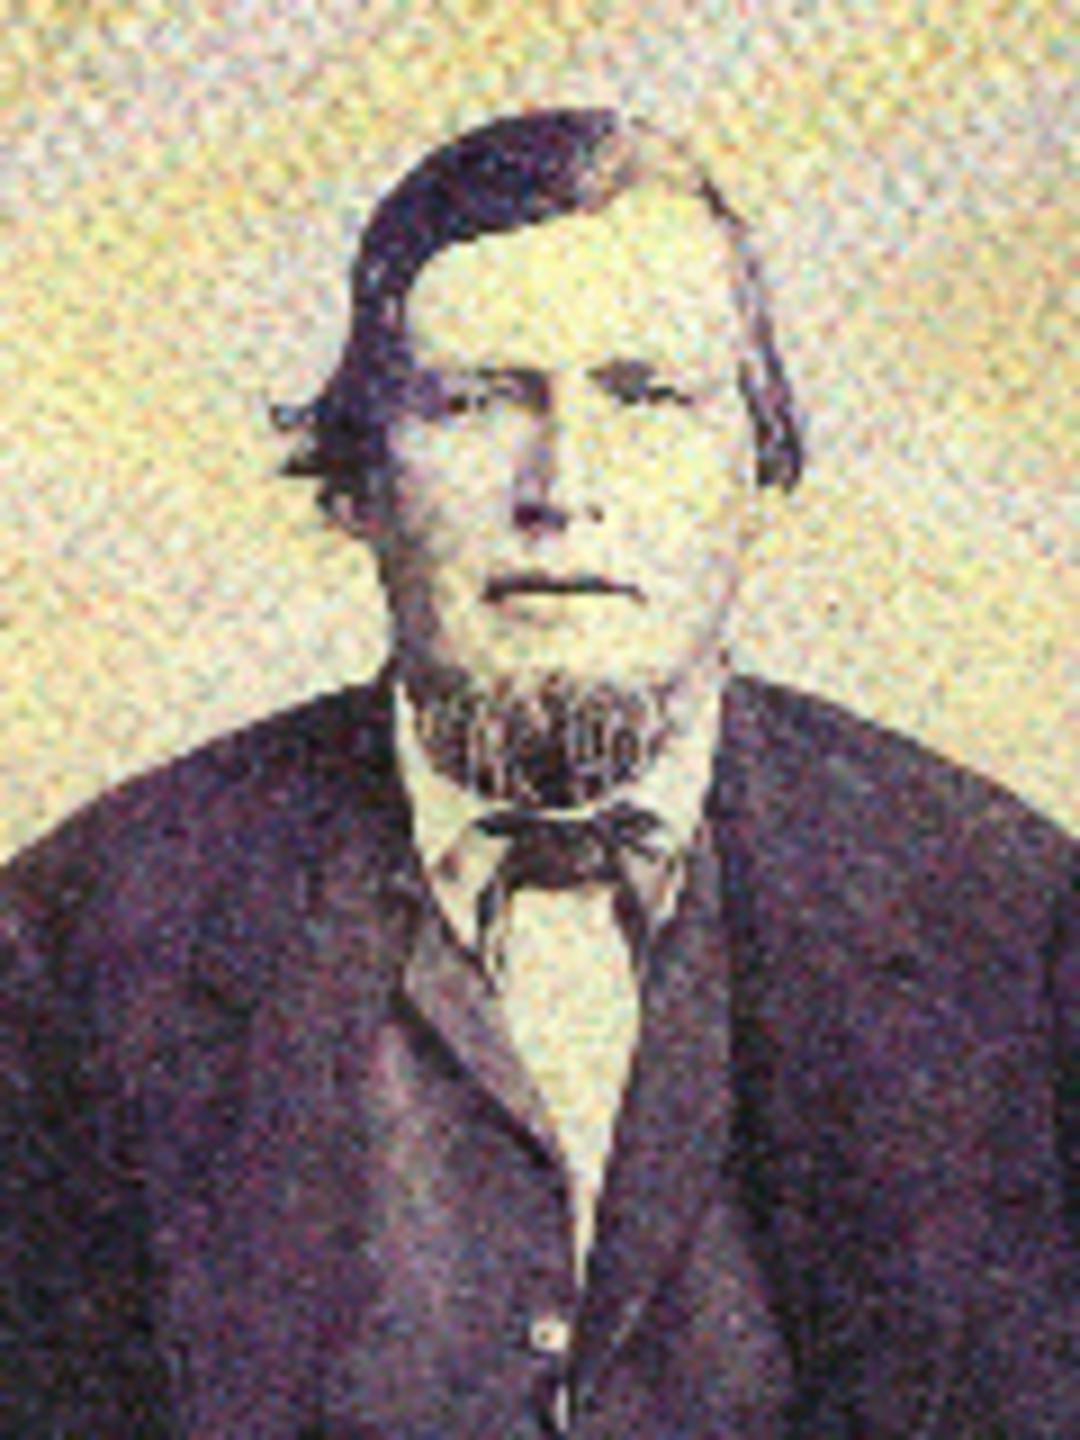 Appleton Milo Harmon (1820 - 1877) Profile